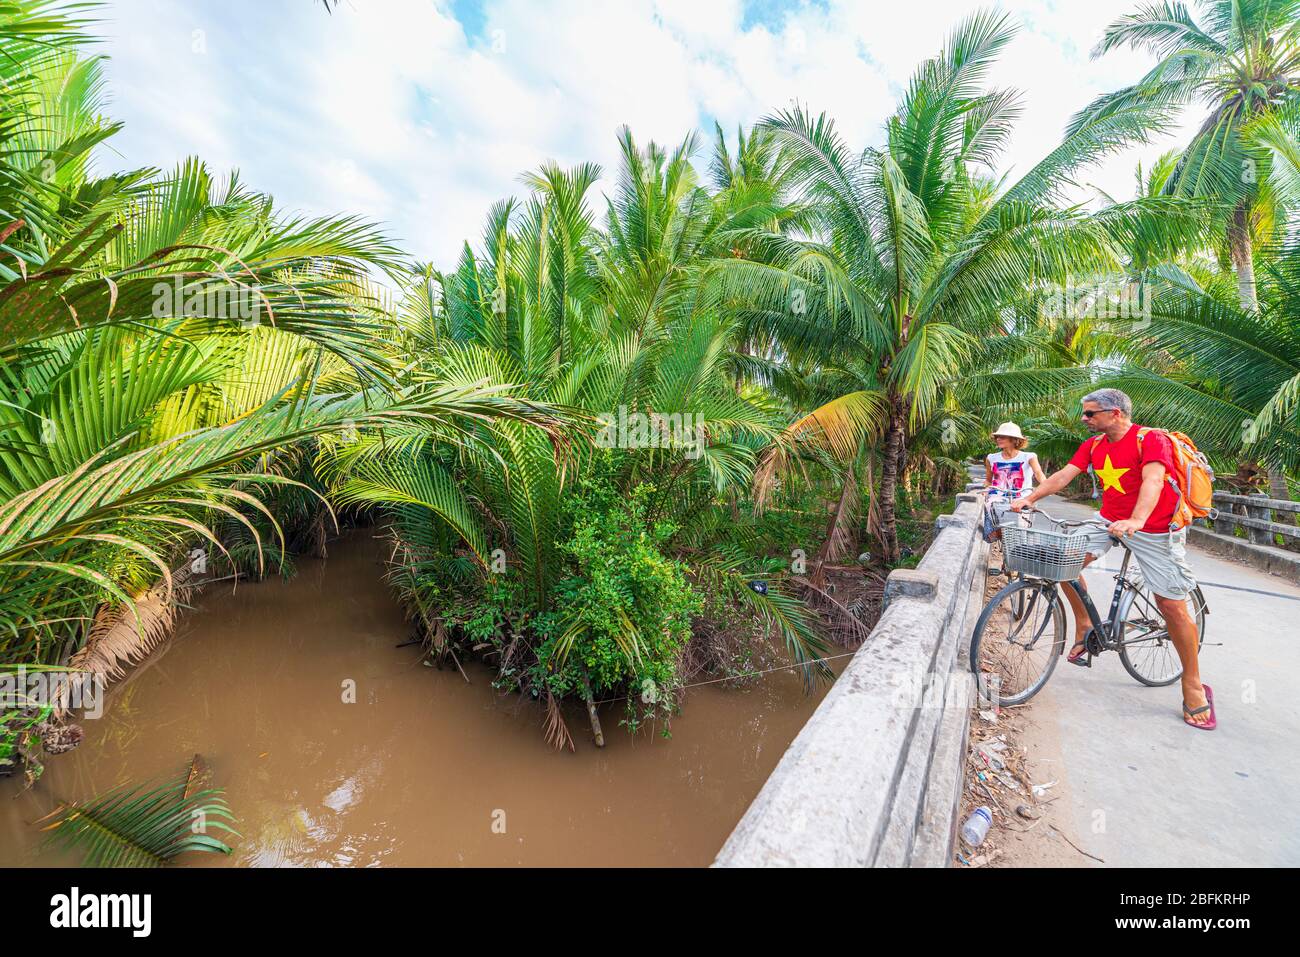 Coppia turistico equitazione bicicletta nella regione del Delta del Mekong, Ben tre, Vietnam del Sud. Donna e uomo avendo divertimento escursioni in bicicletta sul sentiero tra il verde woodl tropicale Foto Stock